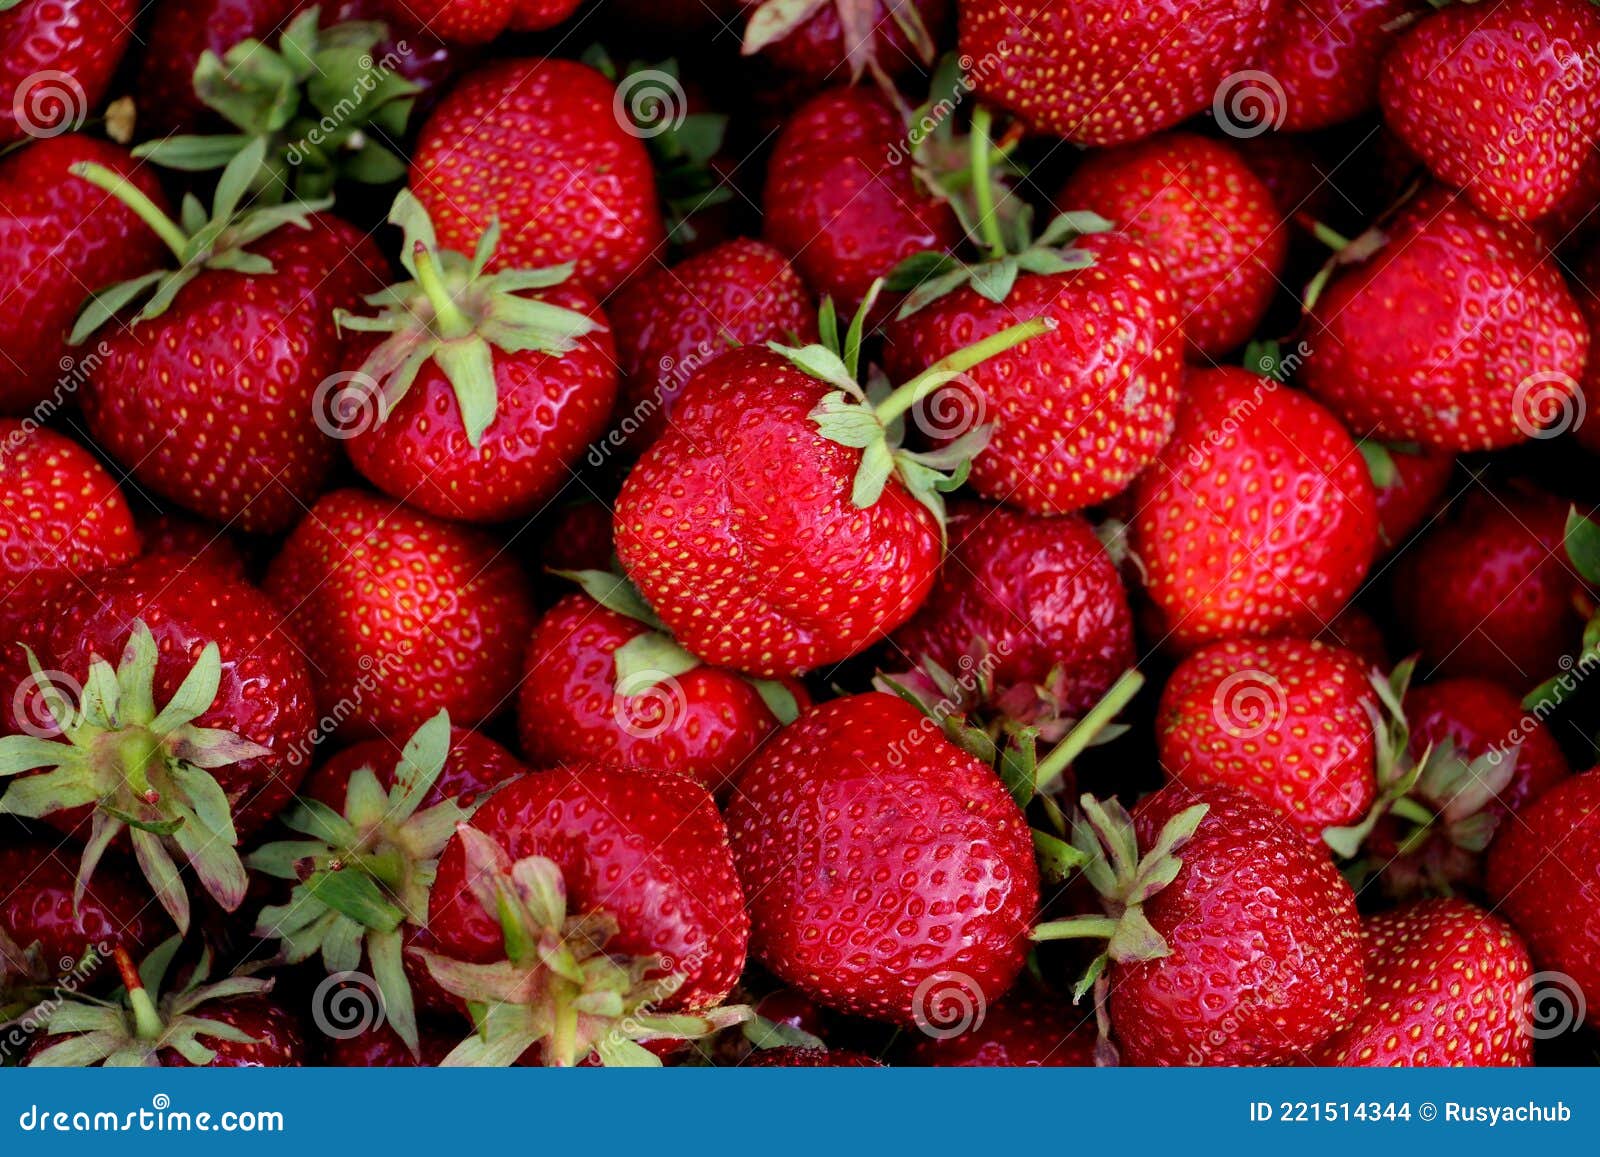 https://thumbs.dreamstime.com/z/fresa-roja-dulce-cosecha-de-fresas-frescas-en-junio-caja-con-berry-madura-trabajo-manual-el-jard%C3%ADn-221514344.jpg